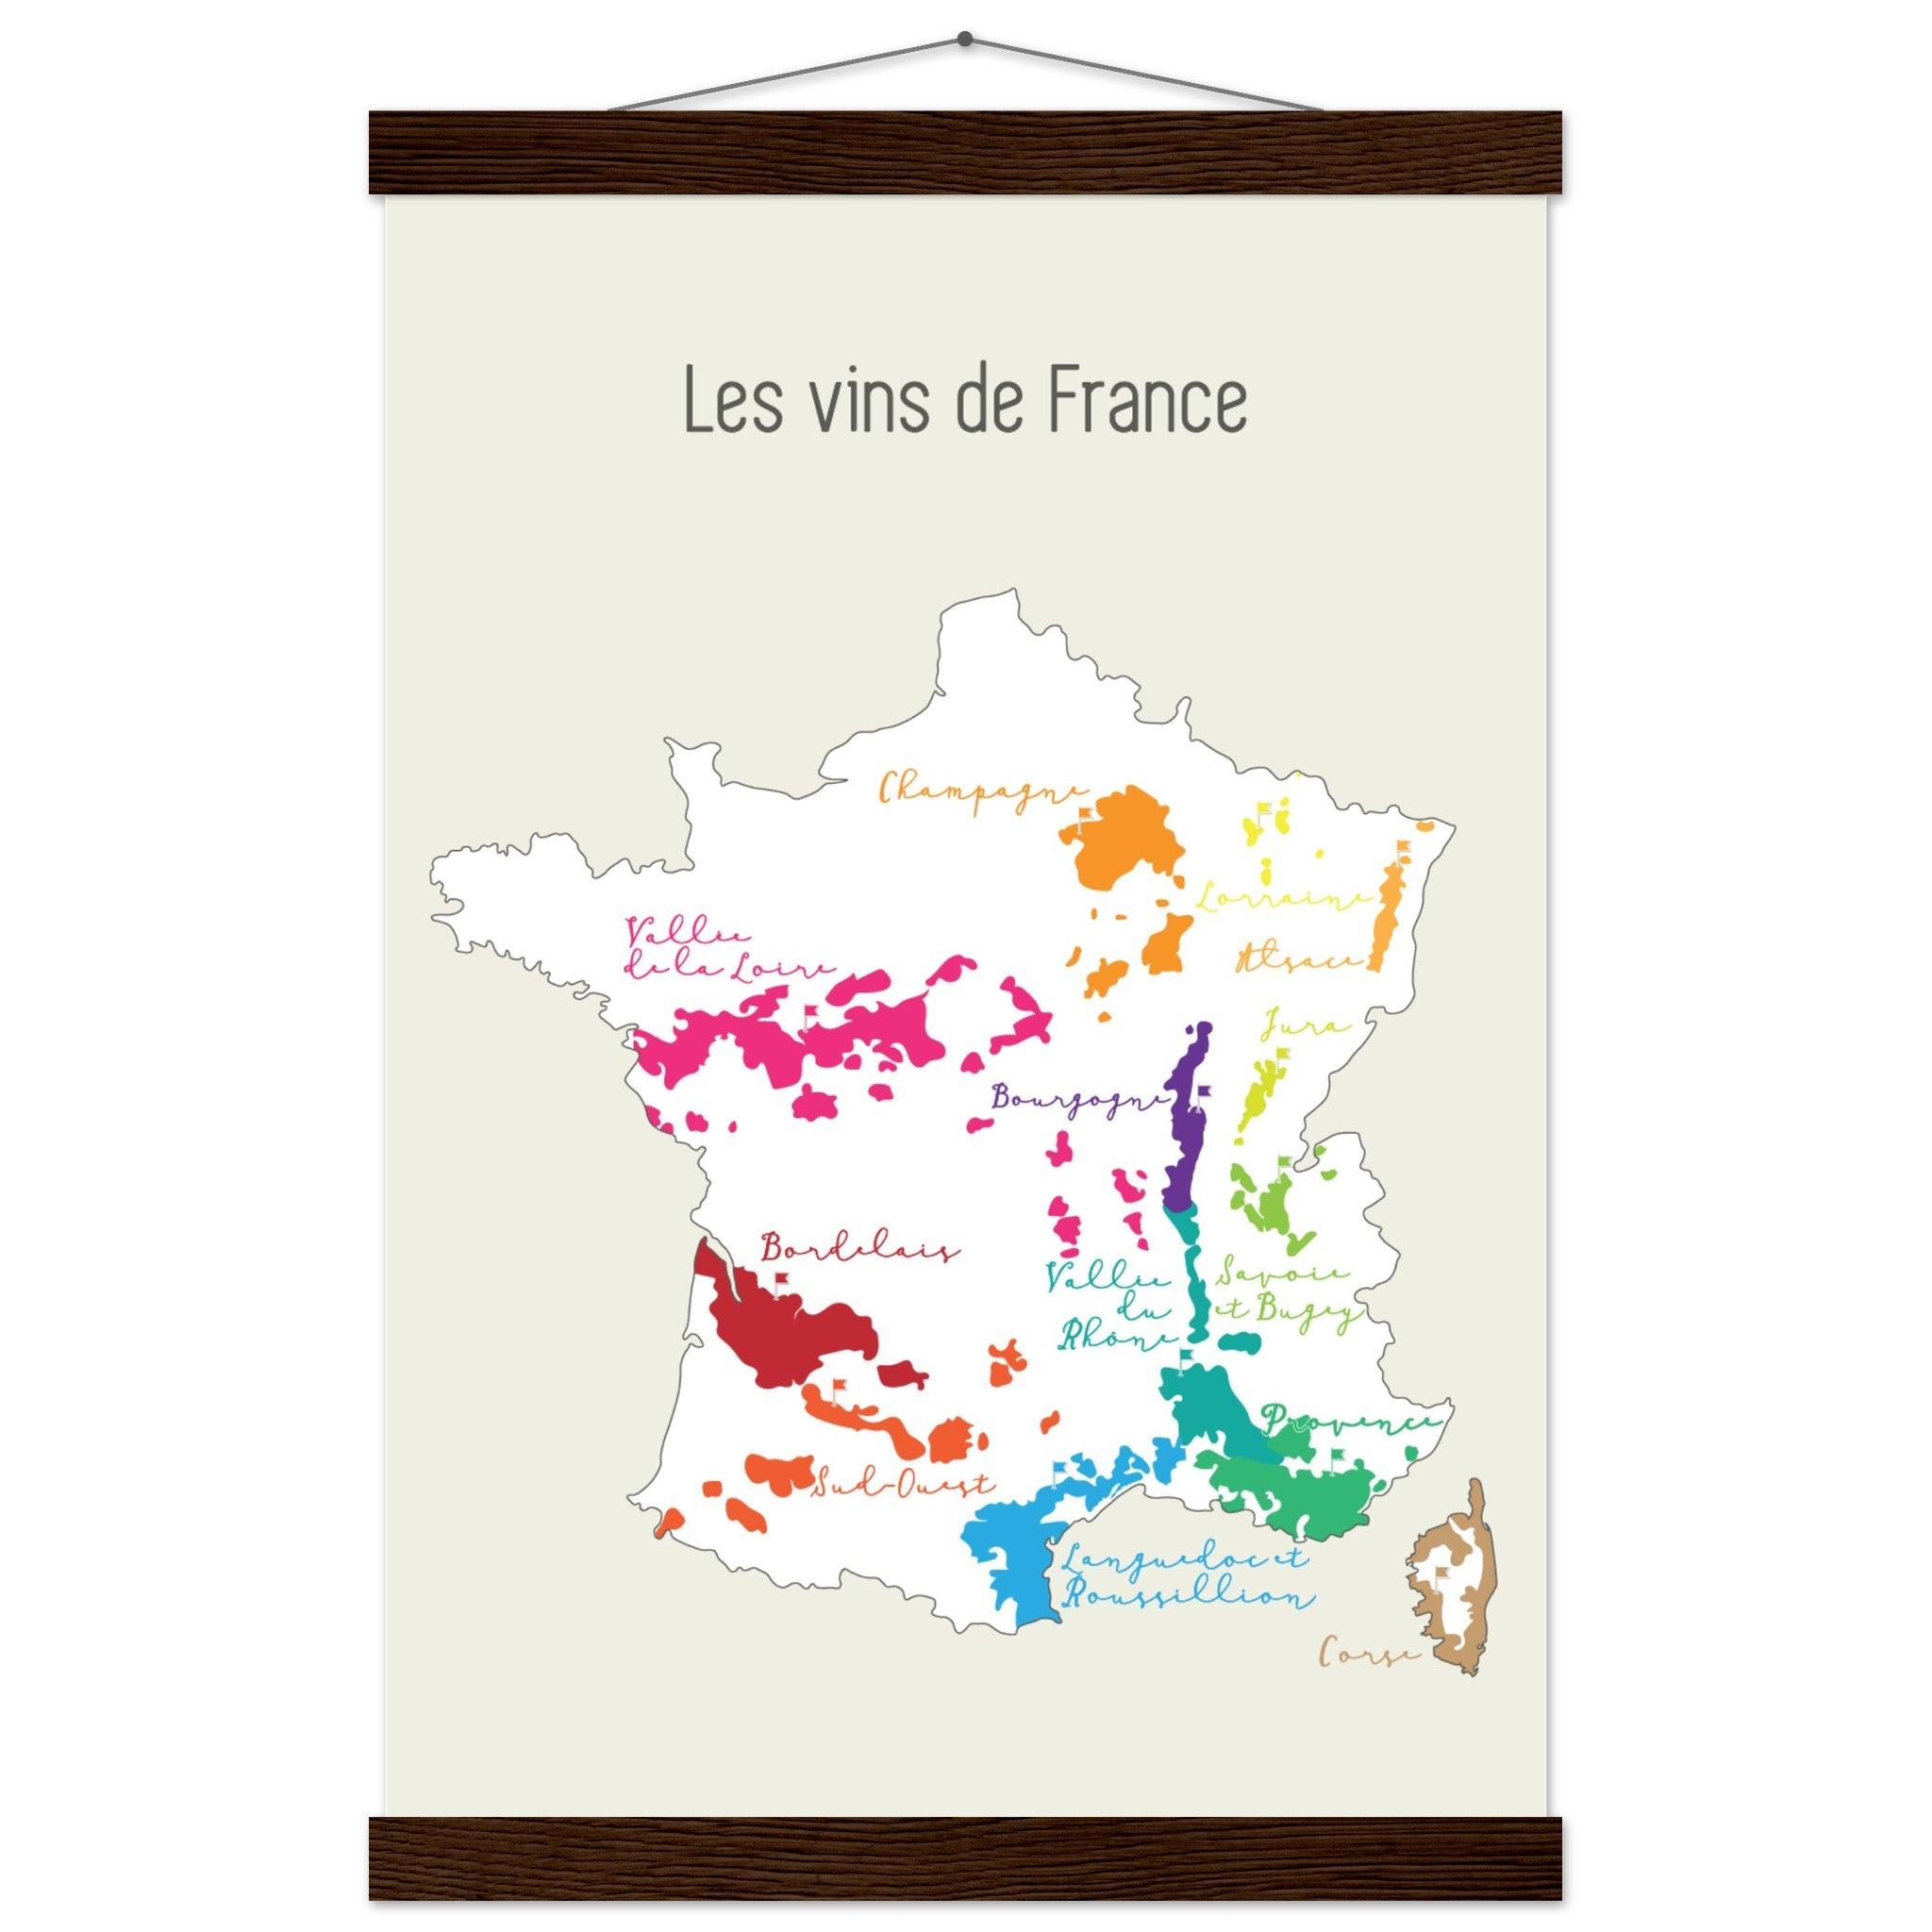 Les Vins de France: A Colorful Map for Wine Lovers